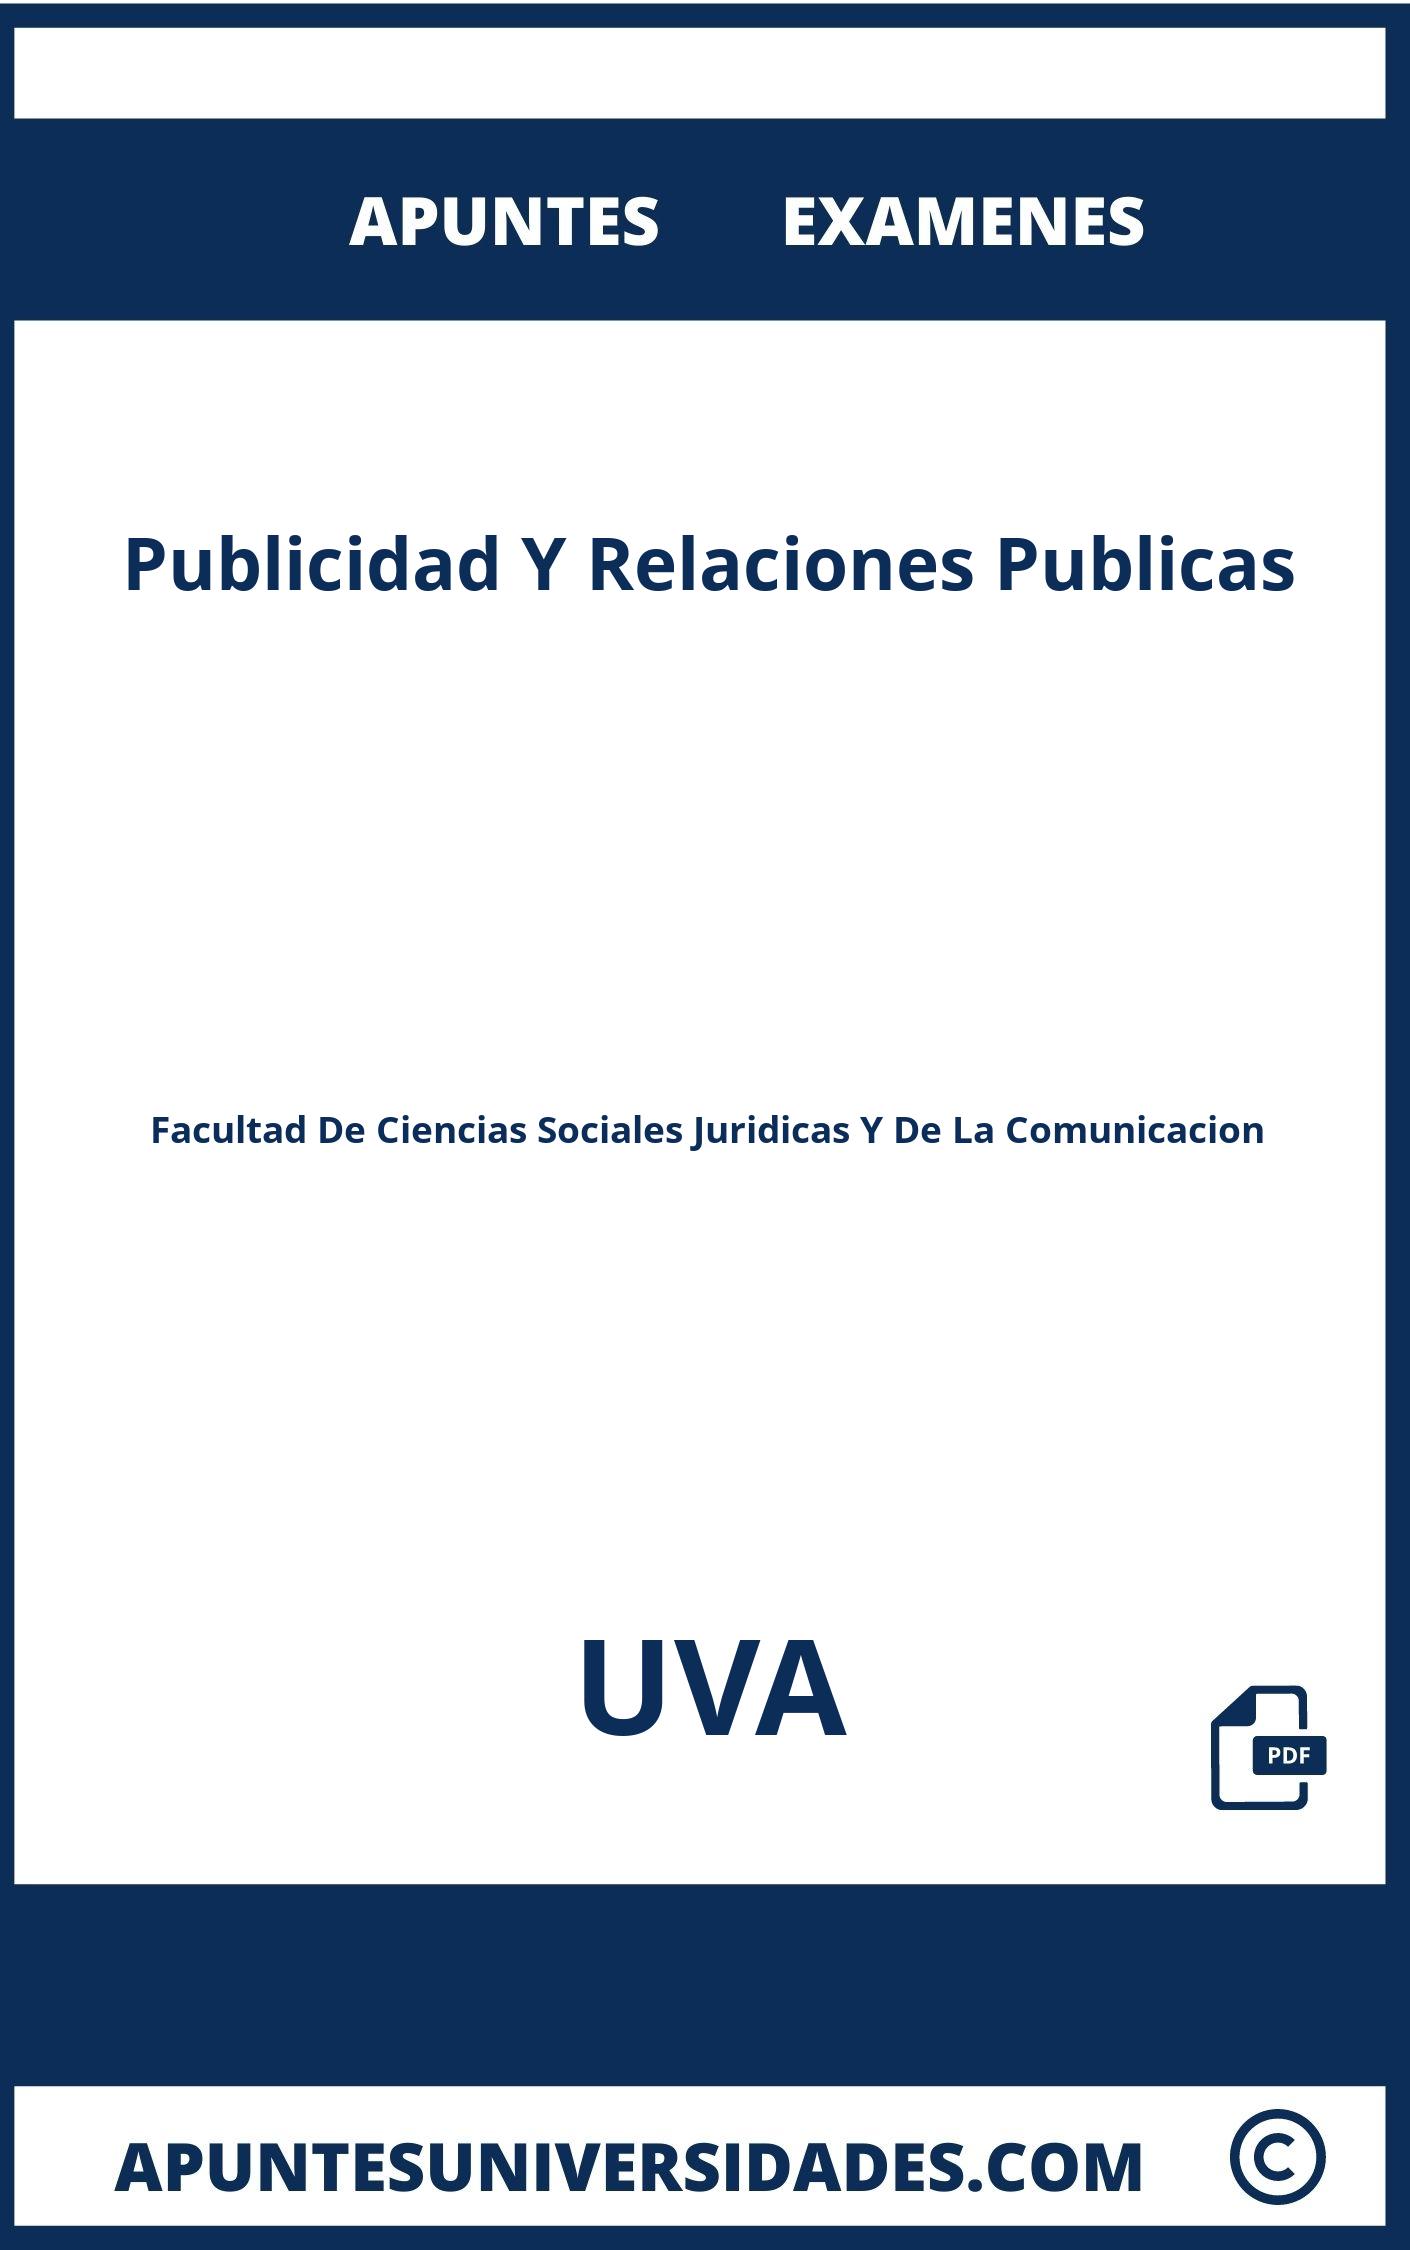 Examenes y Apuntes Publicidad Y Relaciones Publicas UVA